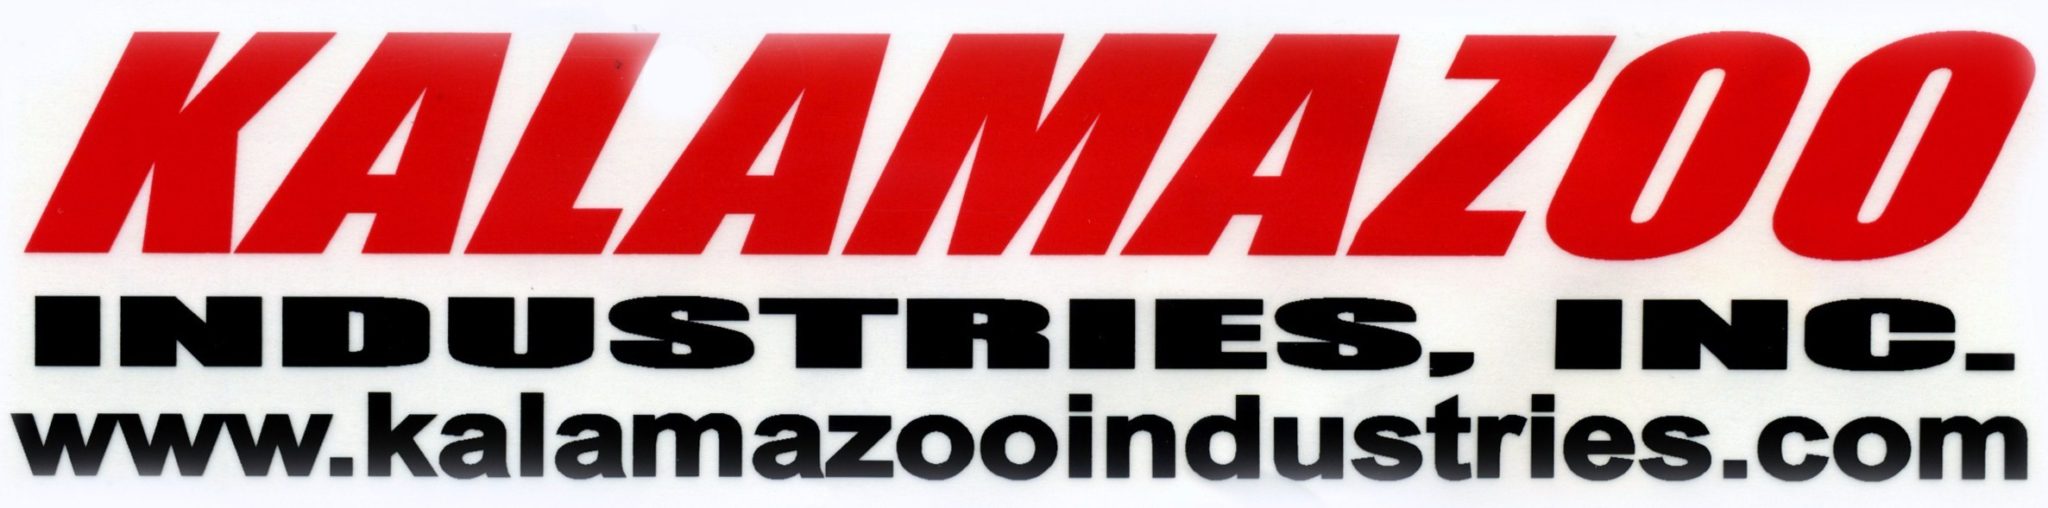 Kalamazoo Industries